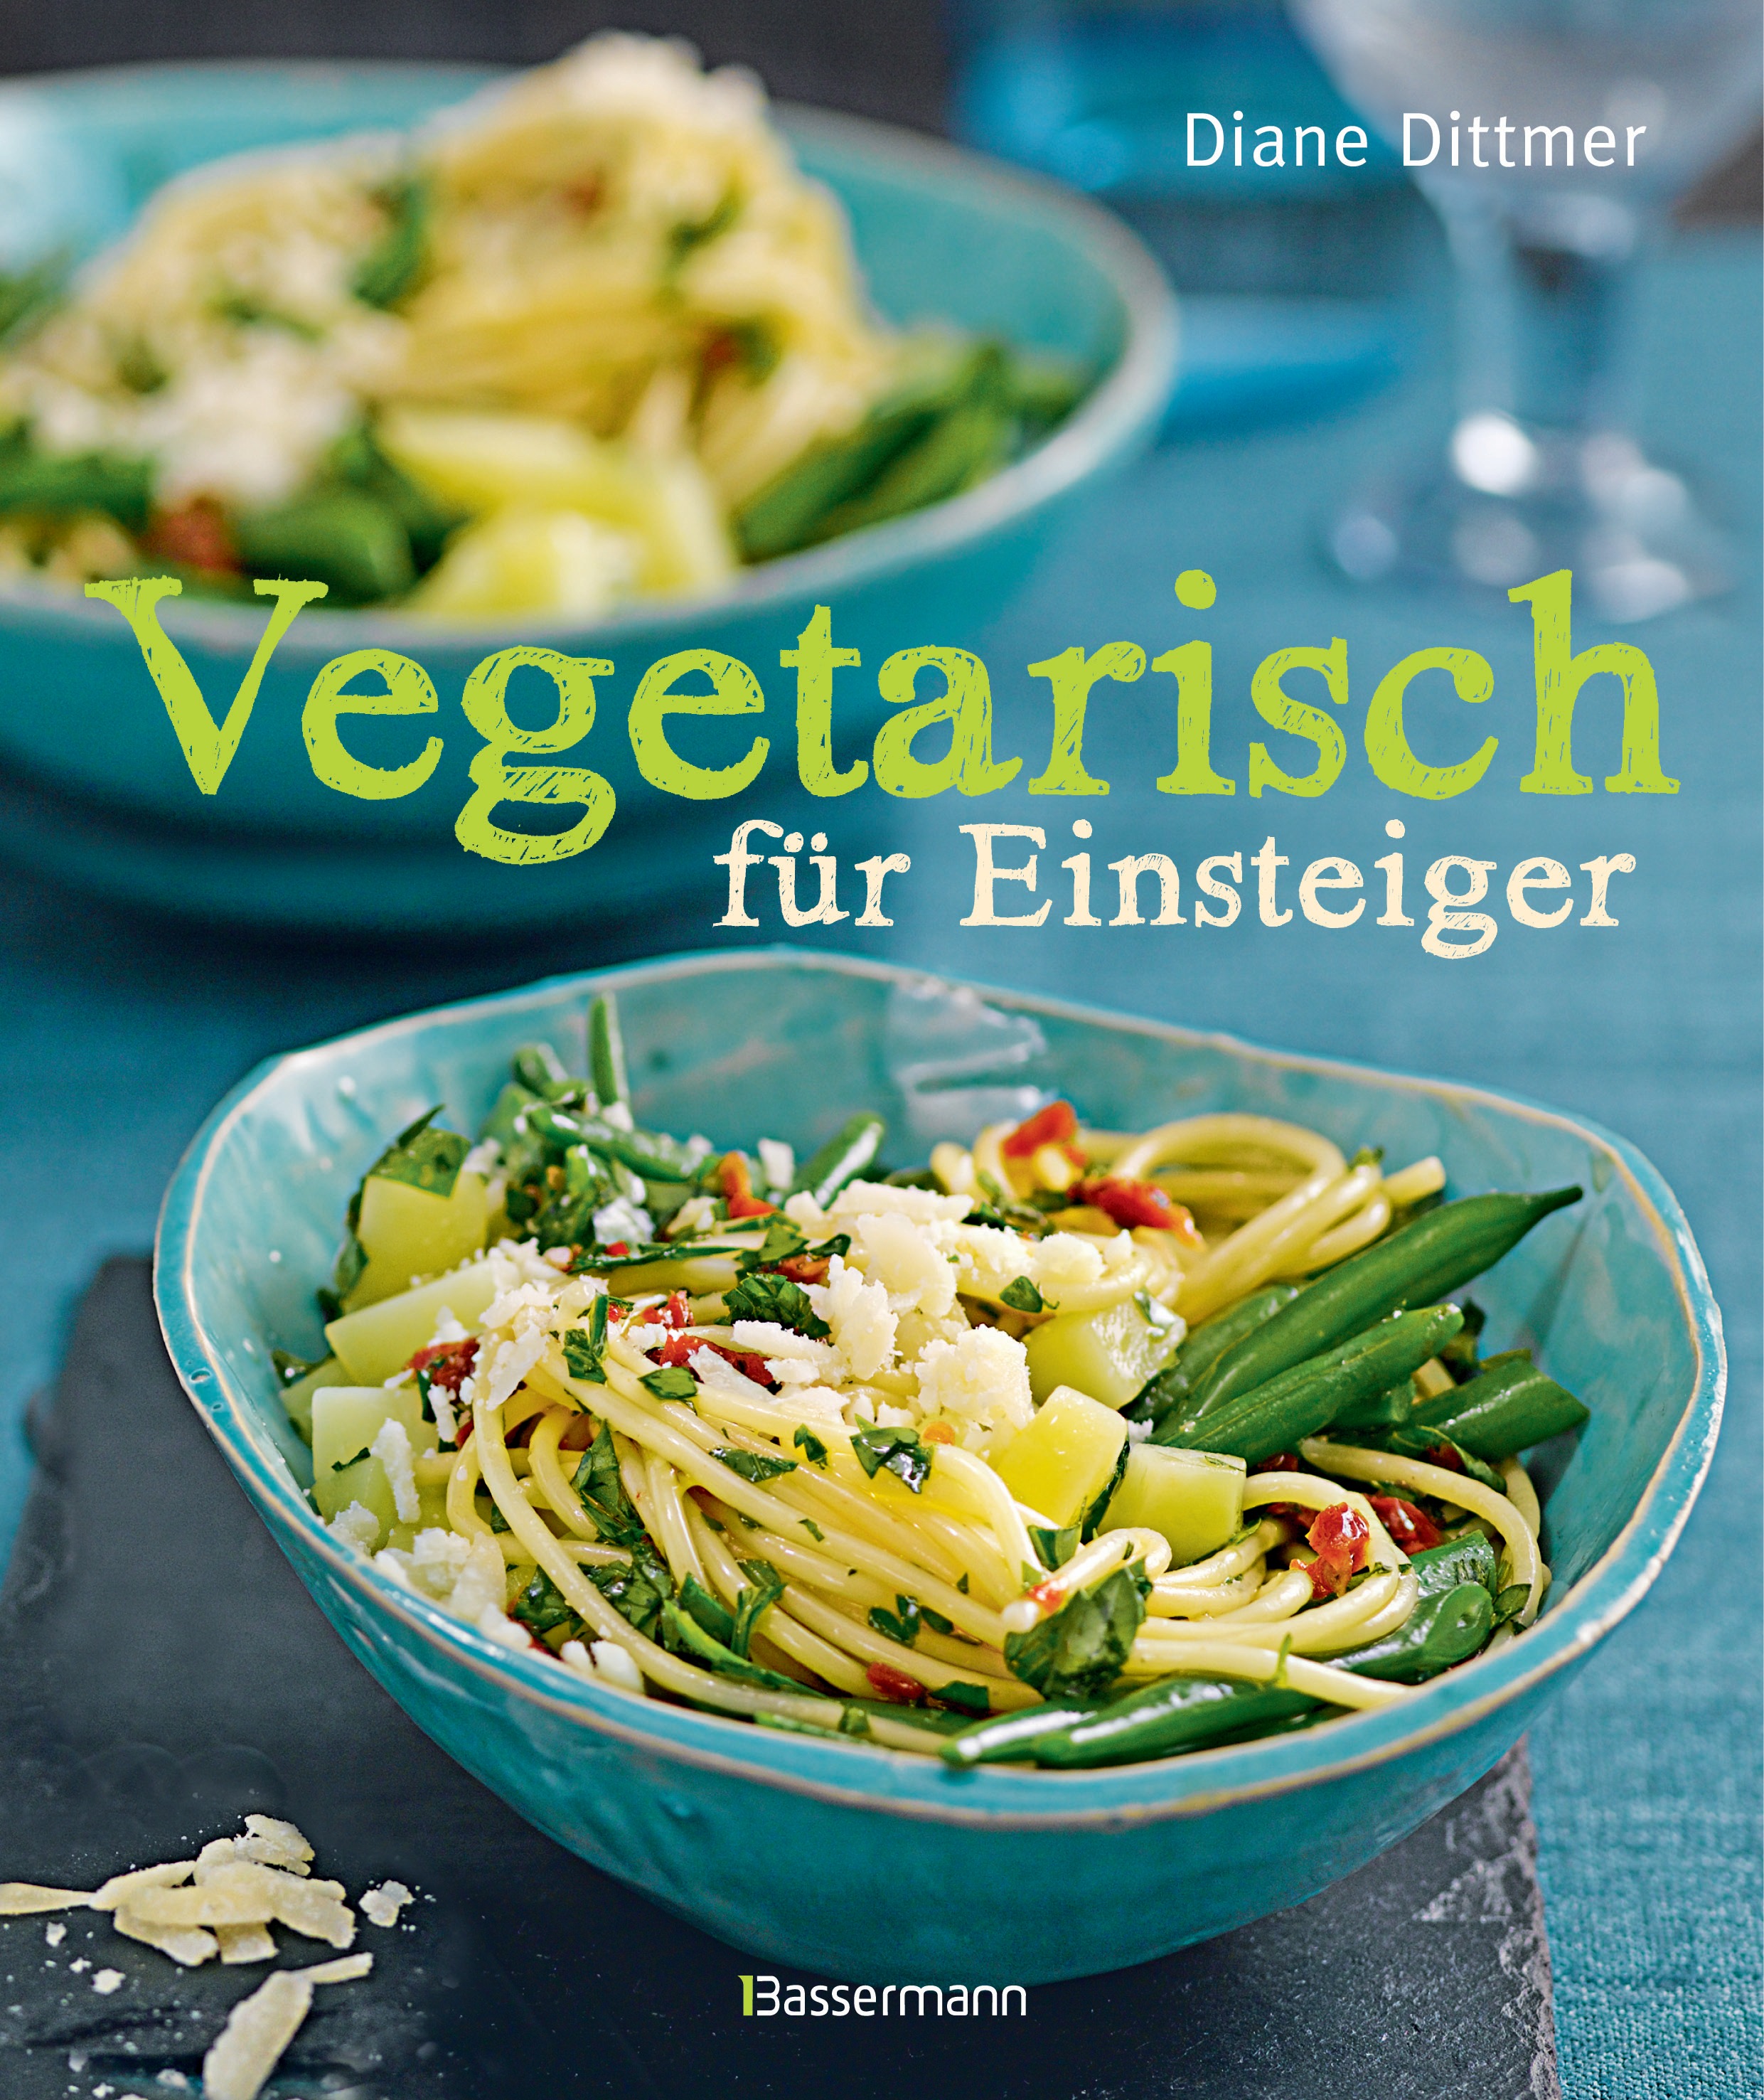 Das große Veggie Kochbuch für Berufstätige 230 vegane und vegetarische Rezepte unter 20 Minuten inkl Nährwertangaben 